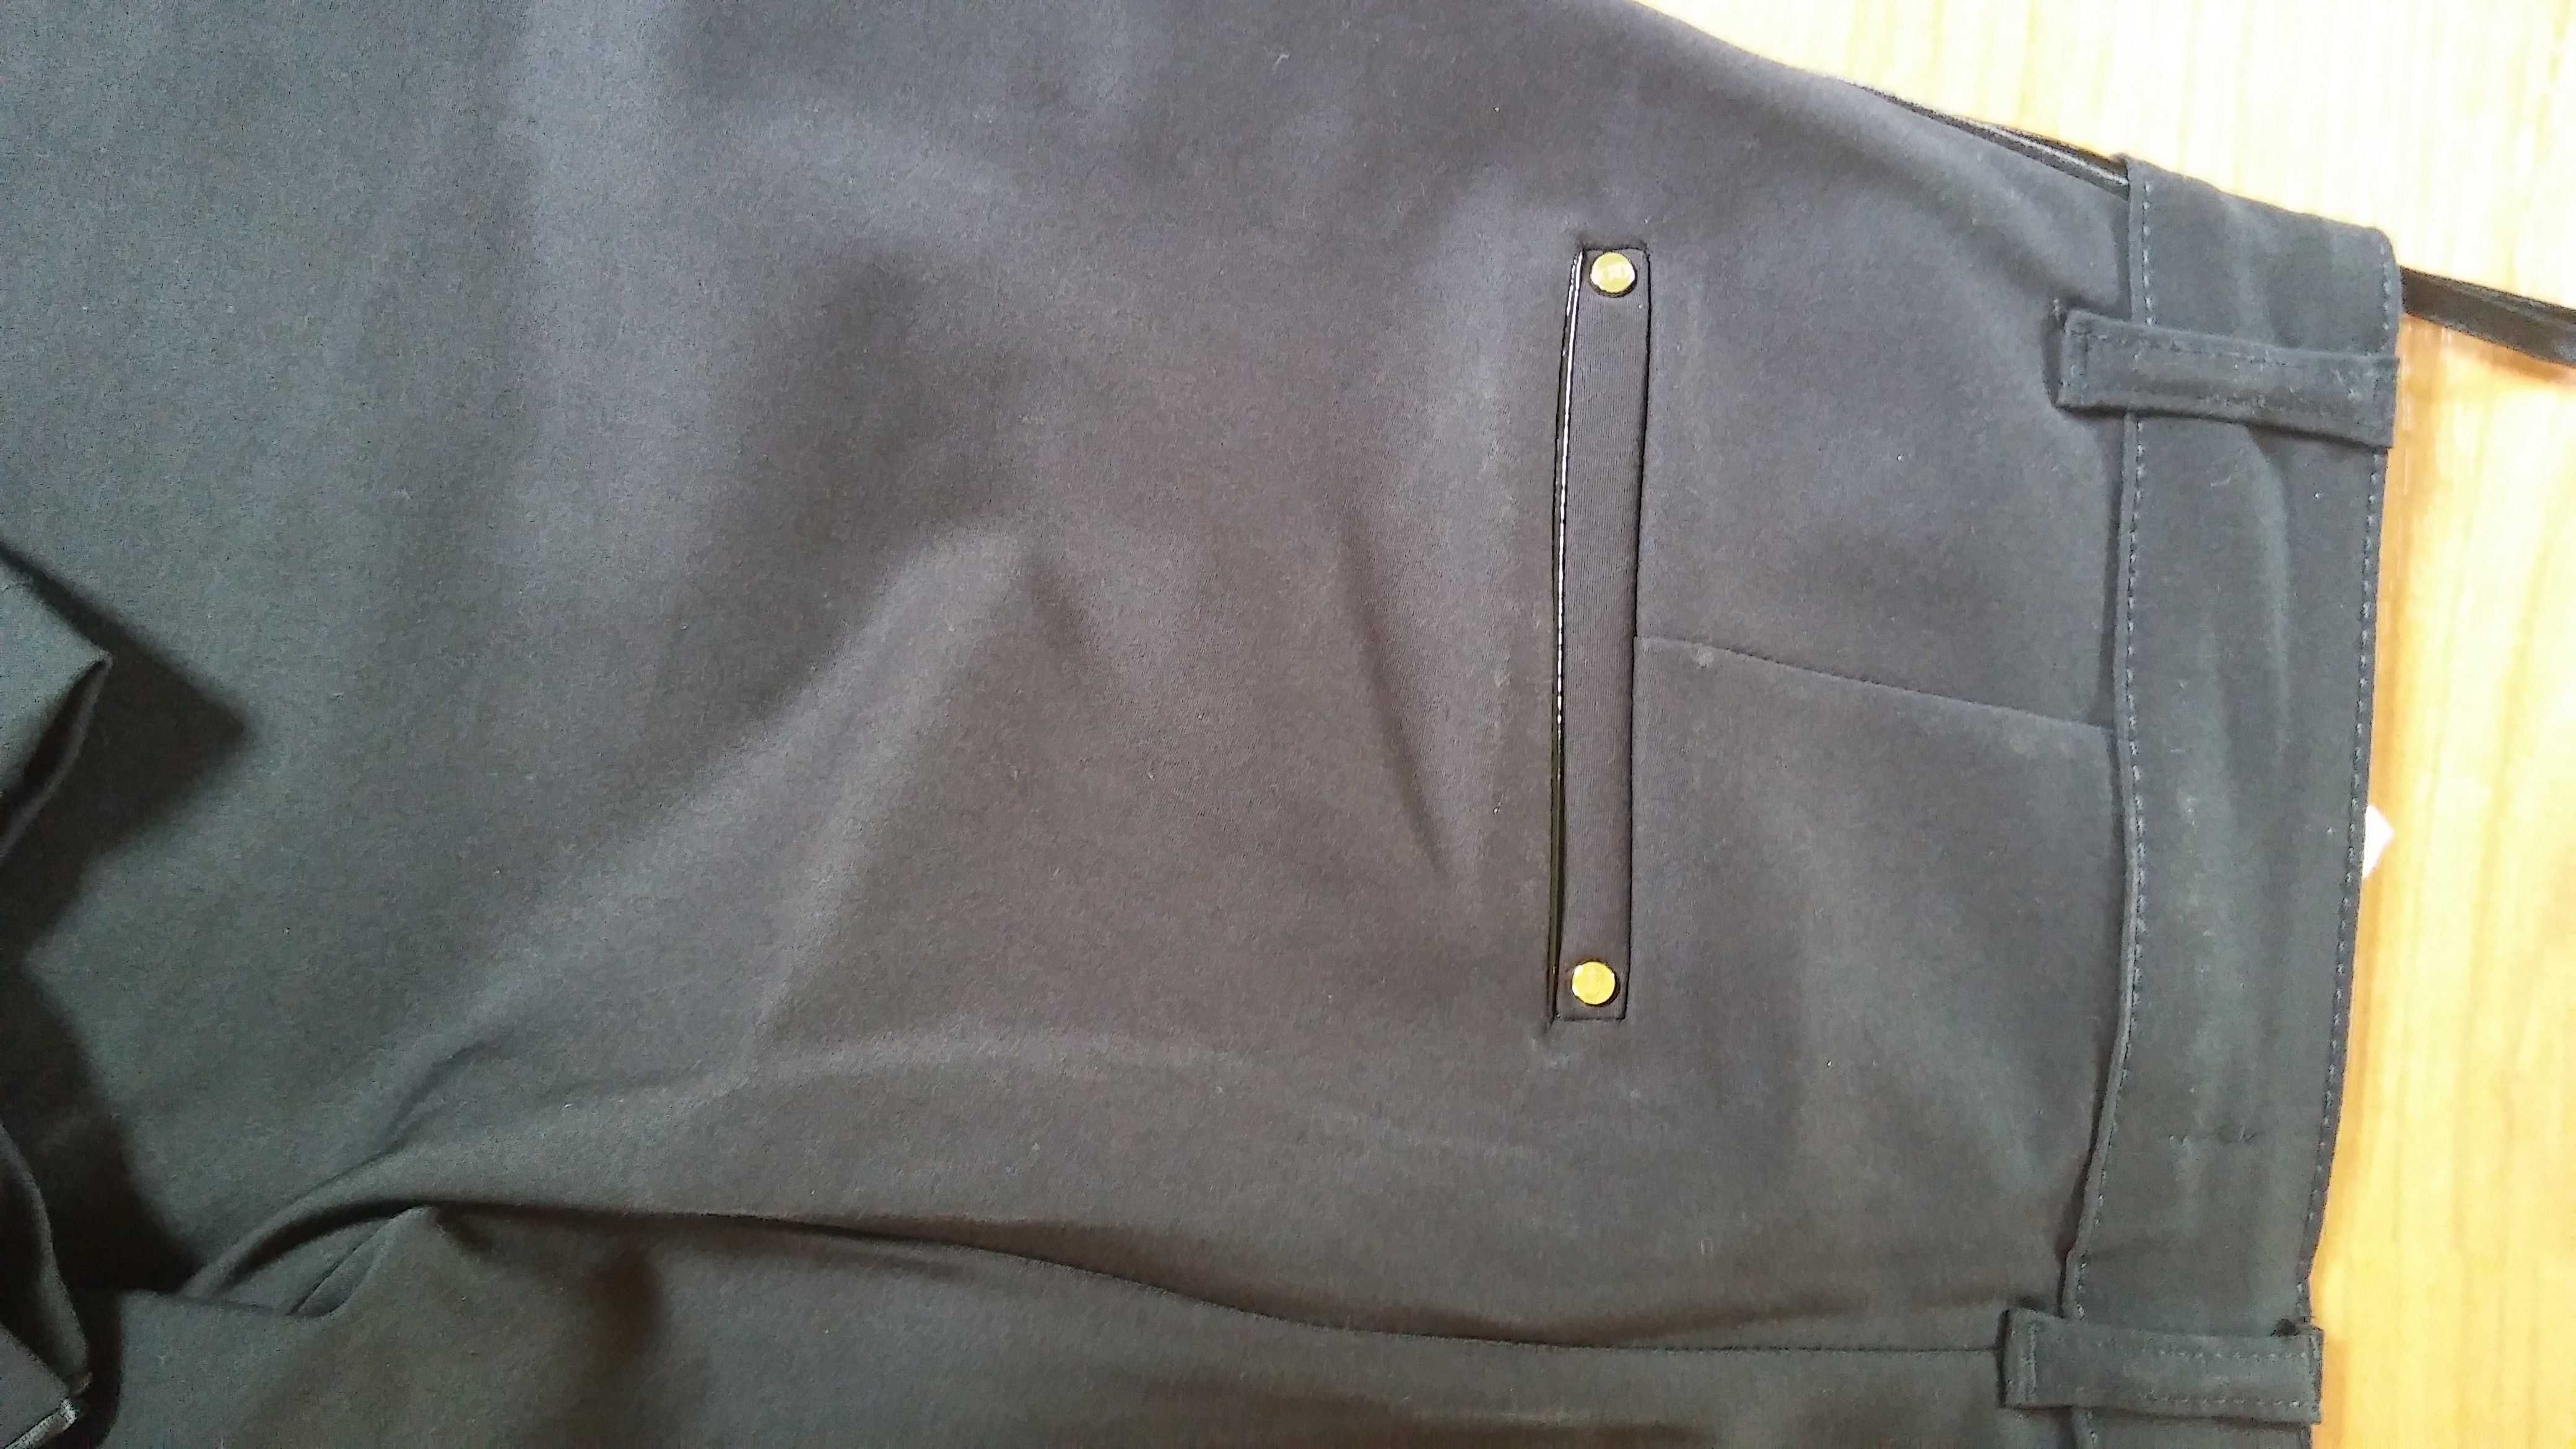 Spodnie czarne Esparanto rozmiar 28